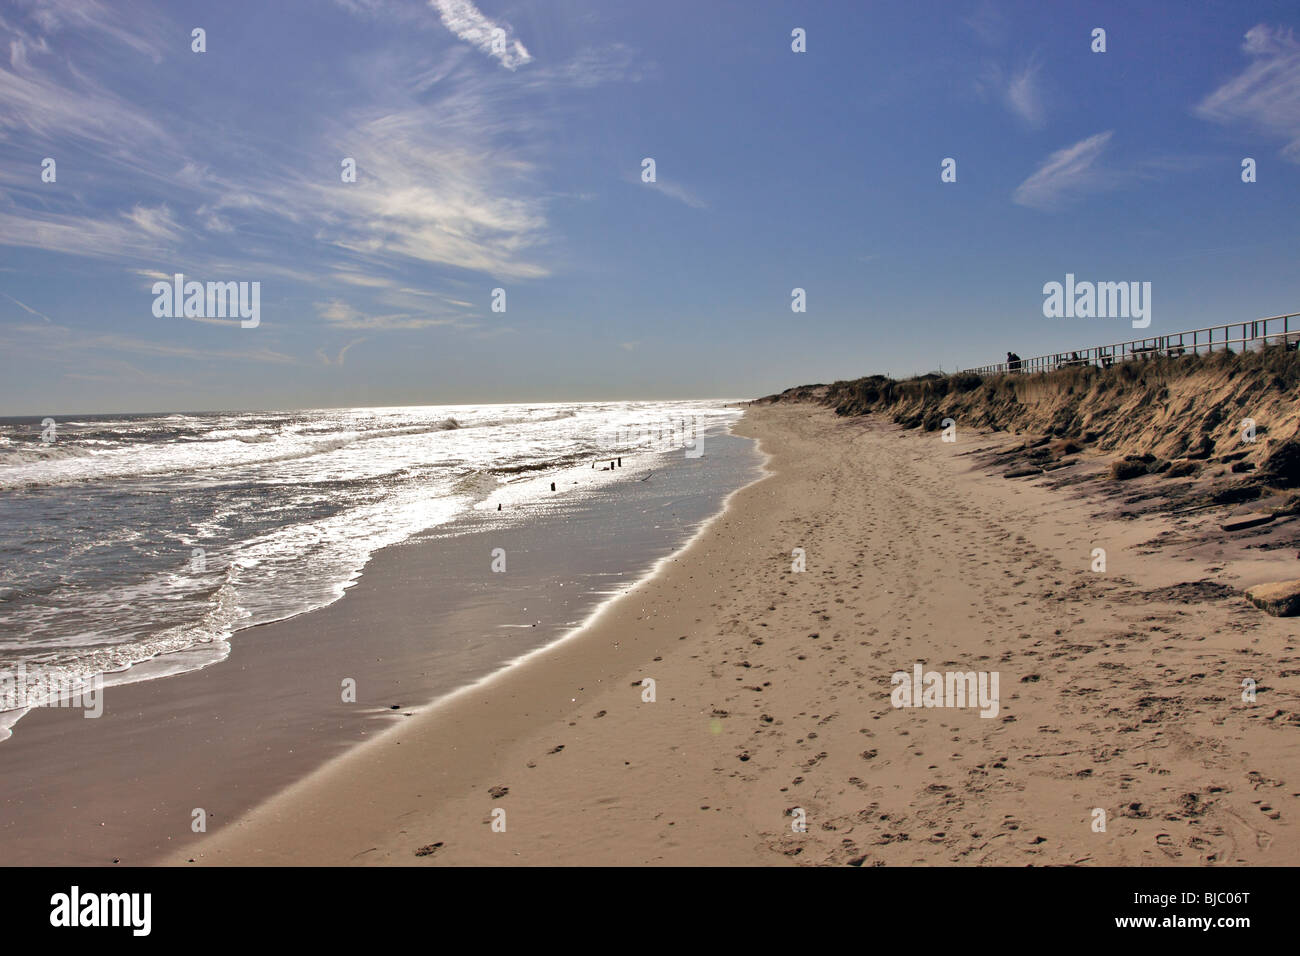 Smith Point Beach on the Atlantic Ocean, Long Island, NY Stock Photo